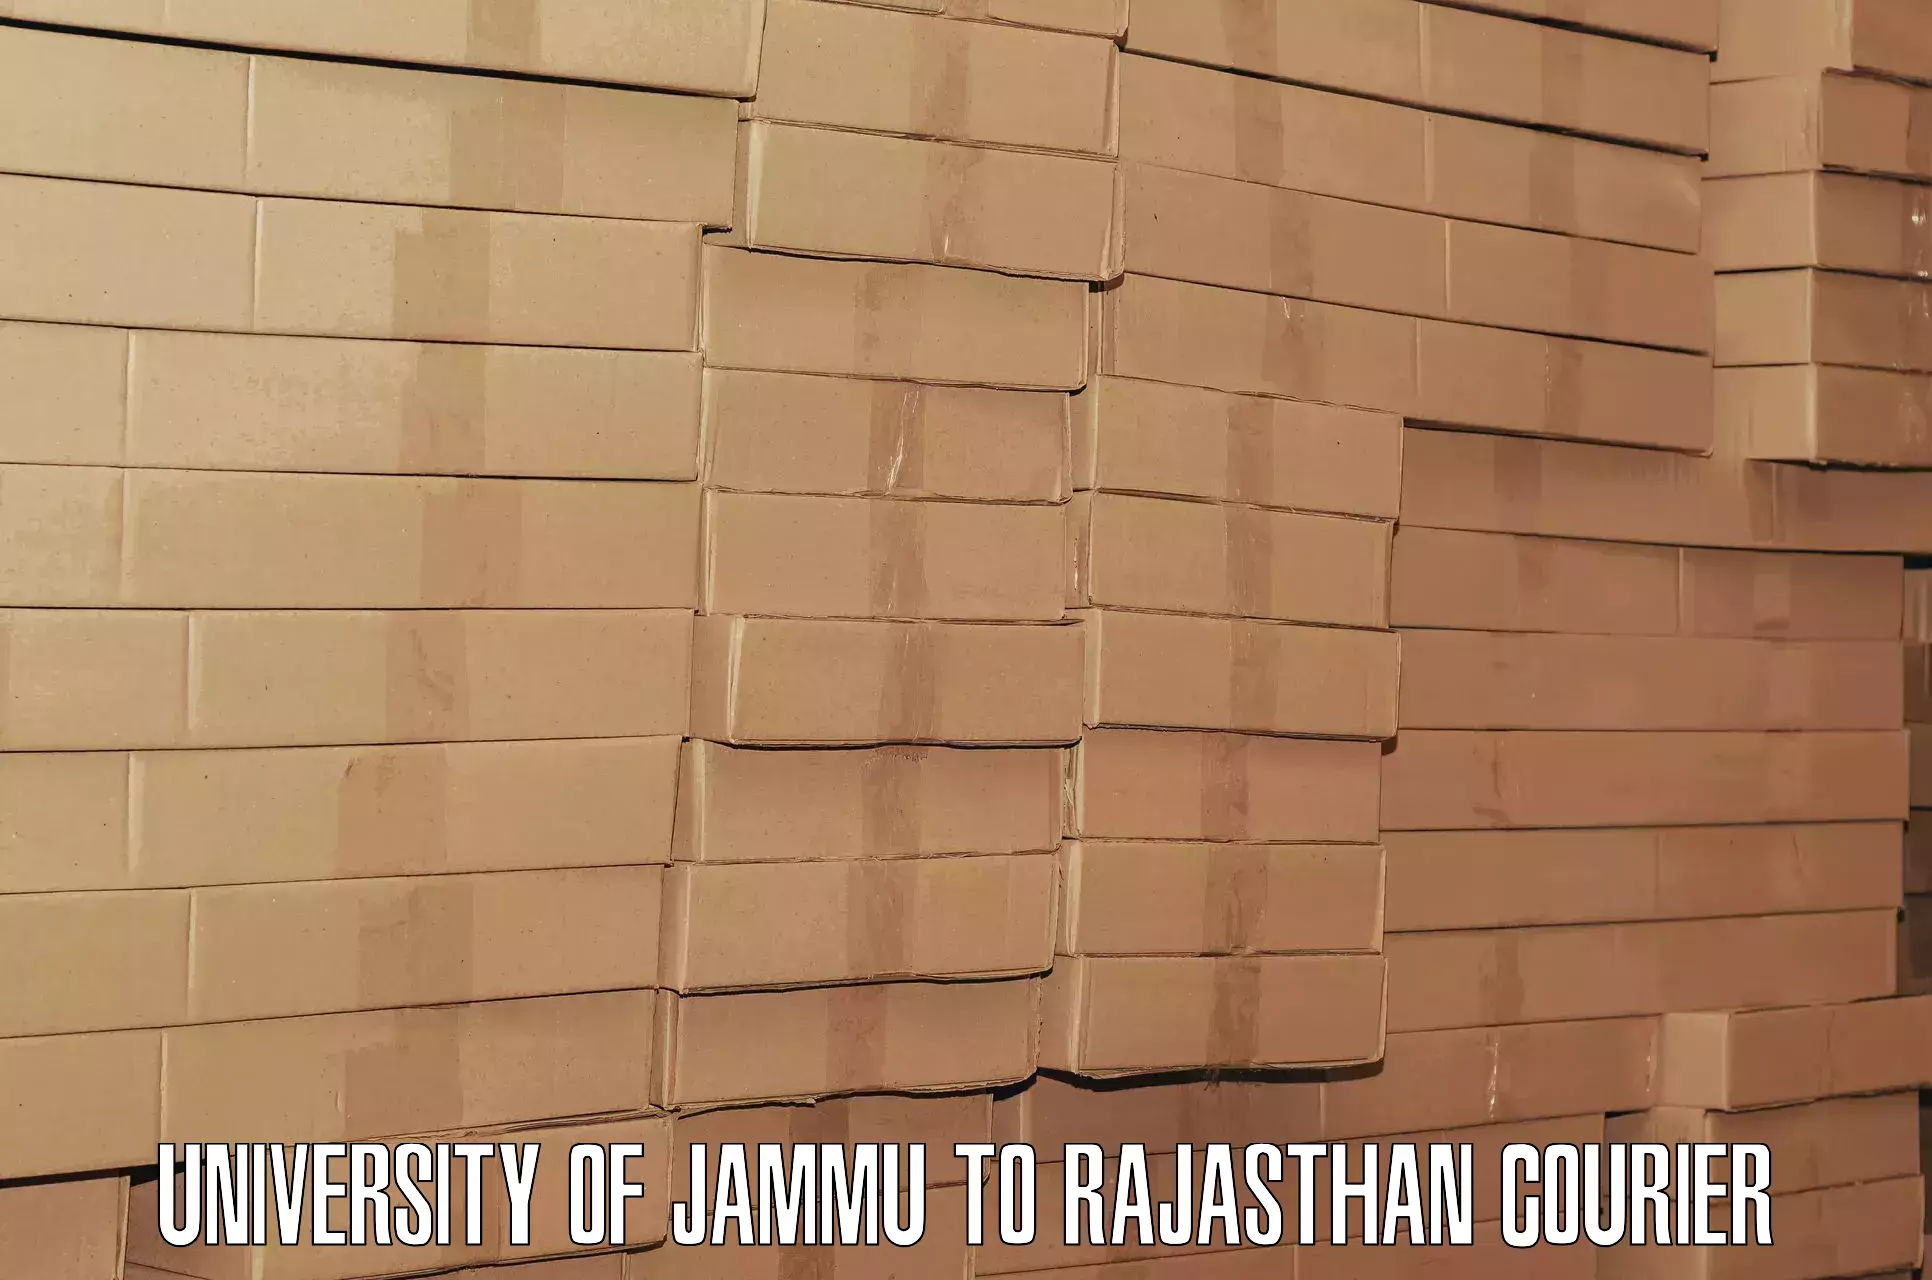 Baggage delivery technology University of Jammu to Bhawani Mandi